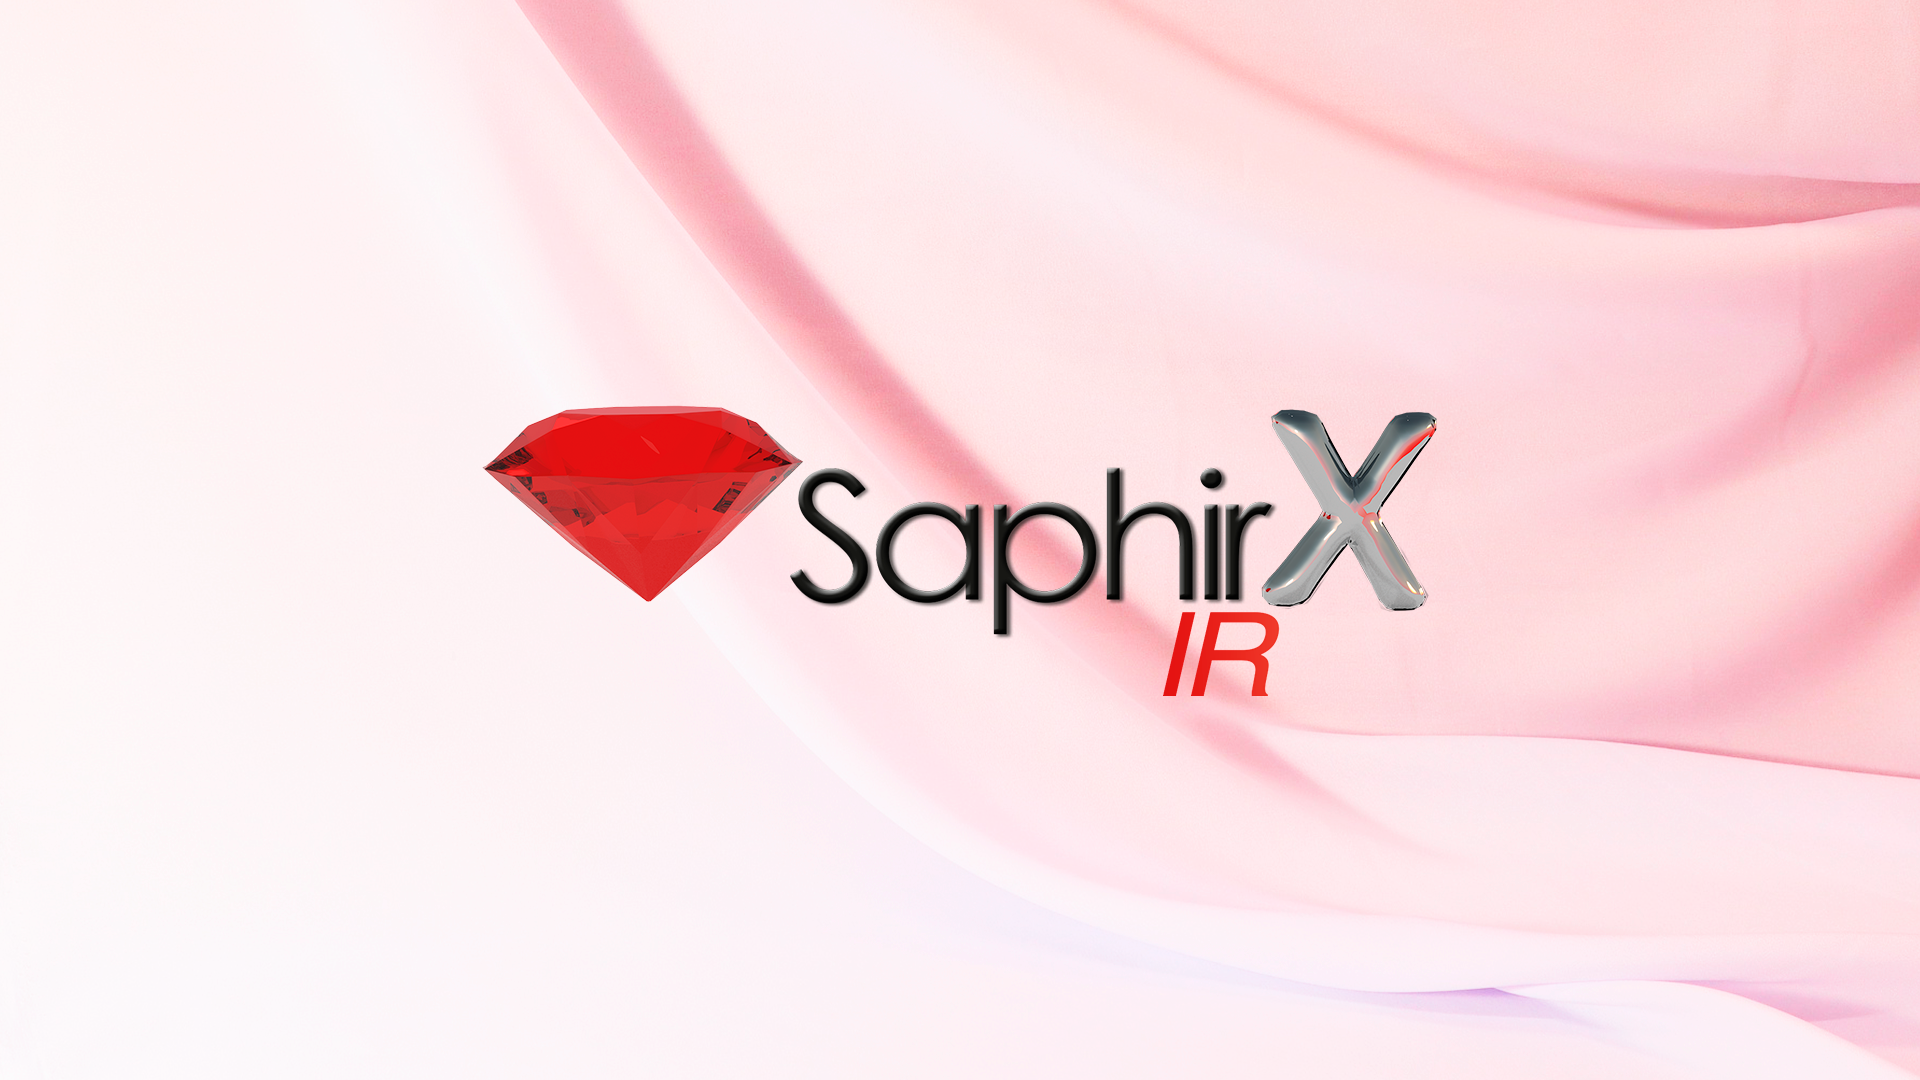 Saphirx Ir